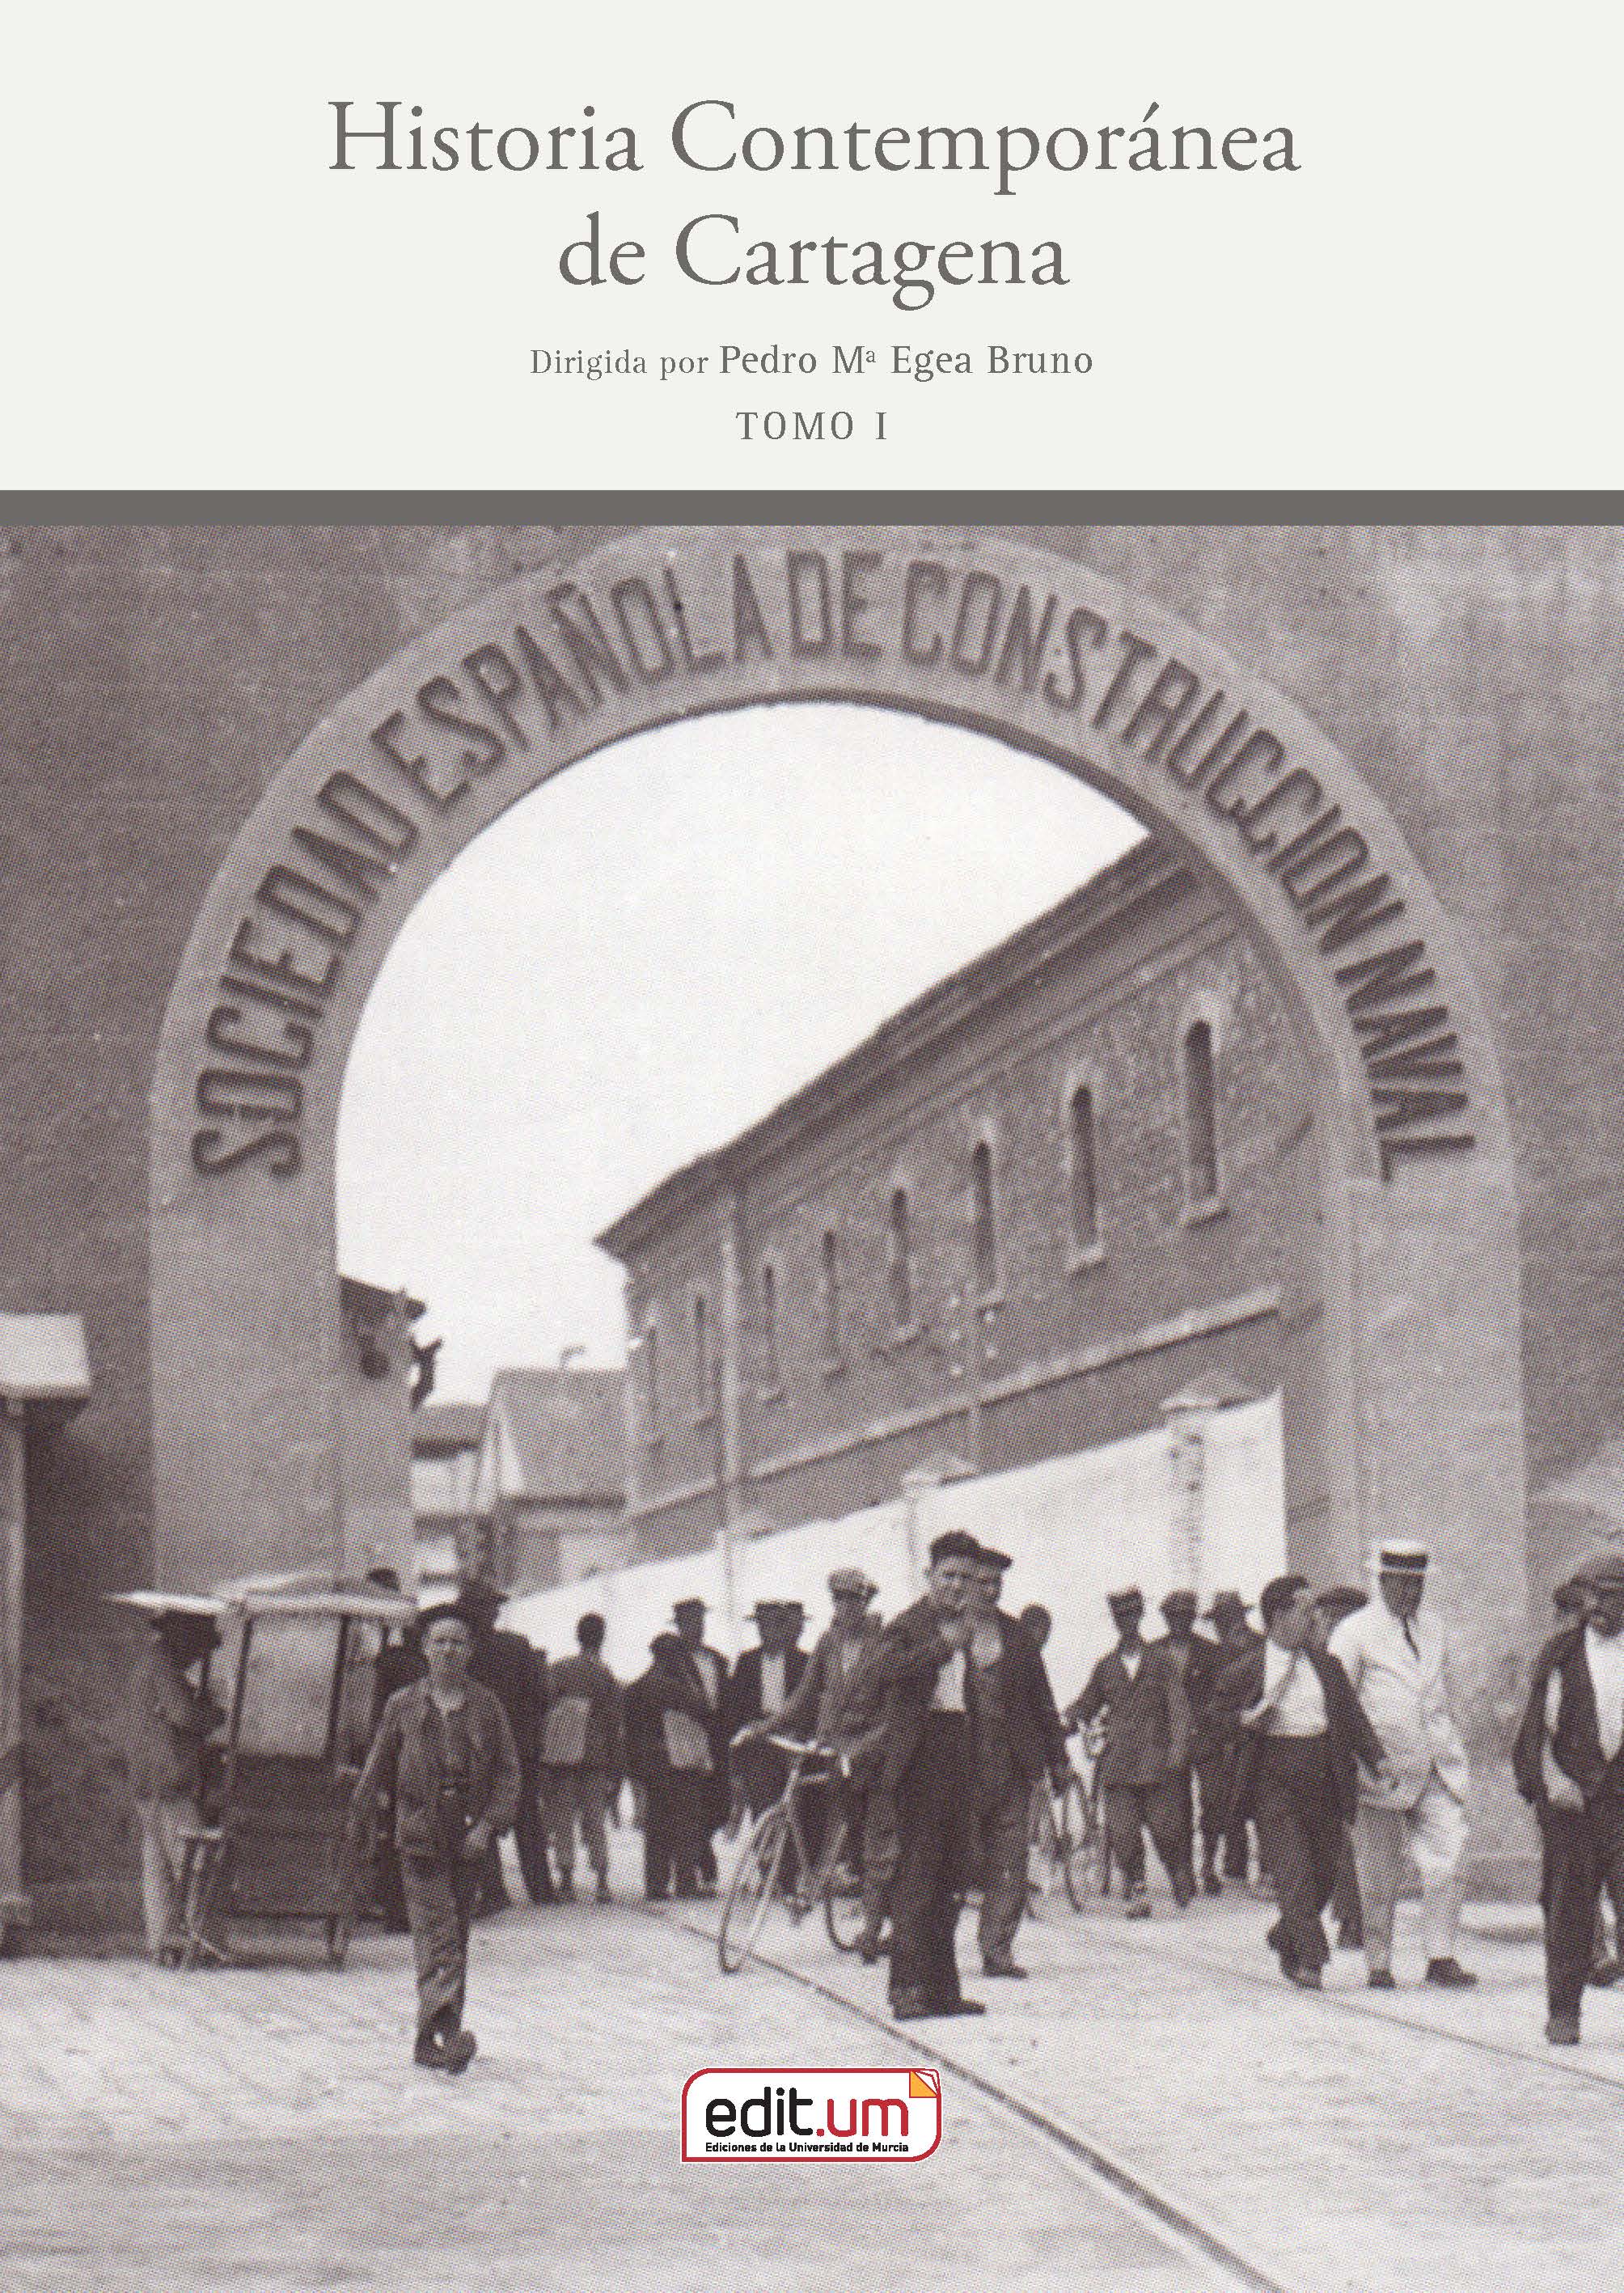 Historia Contemporánea de Cartagena